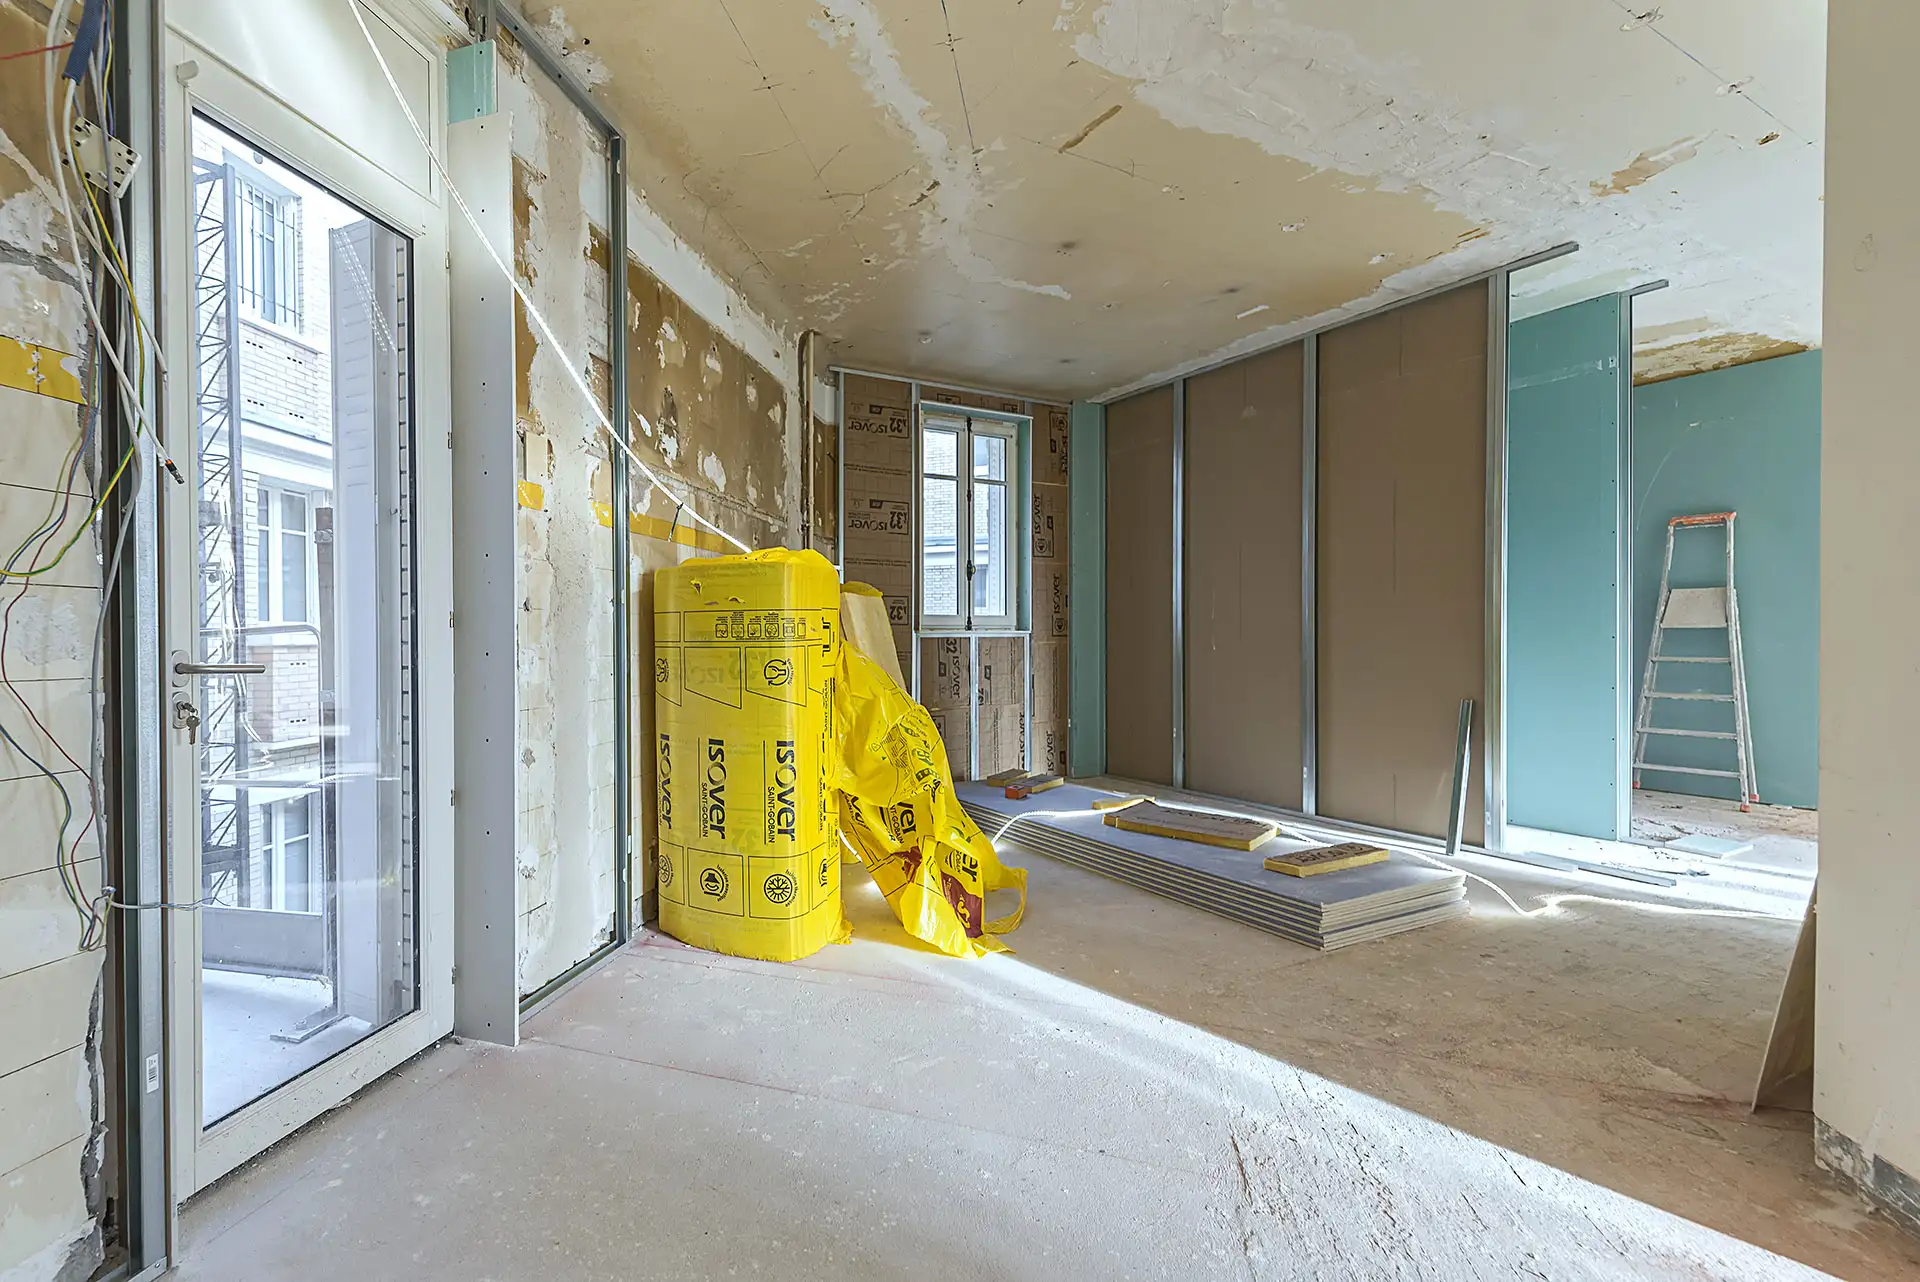 Photo 19 des travaux d’isolation thermique par l’intérieur, pose de faux-plafonds et cloisons distributives pour un particulier Rue Raynouard.